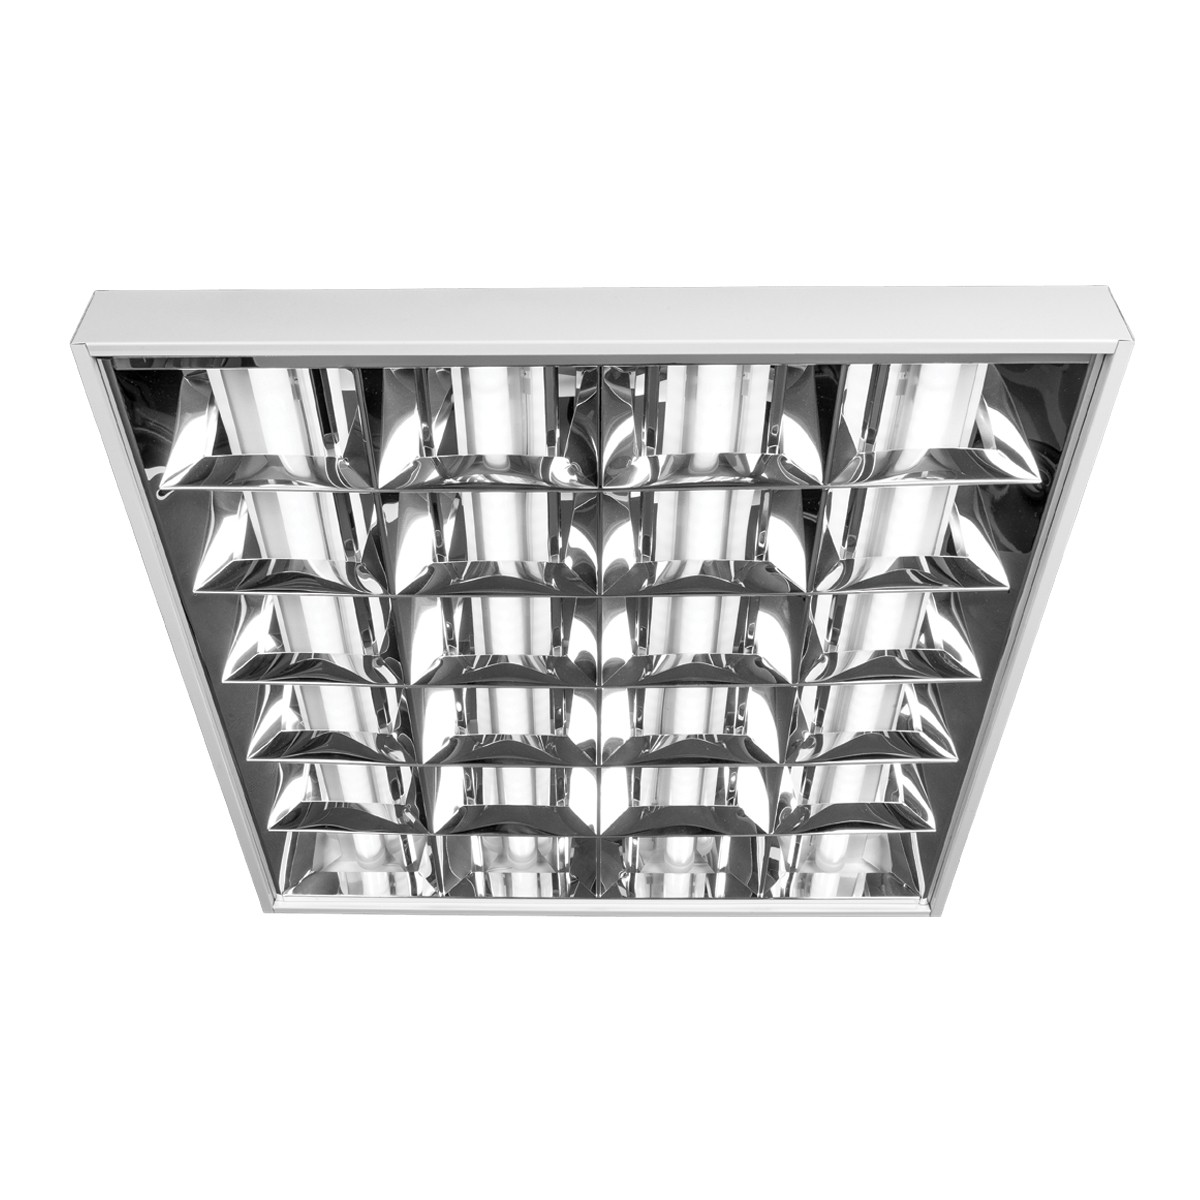 Φωτιστικό led πάνελ τετράγωνο με 3 διπλούς καθρέπτες, λευκό πλαίσιο, 44W, 4000K, 4.000lm, 900mA VK/04286/900/3/W/C